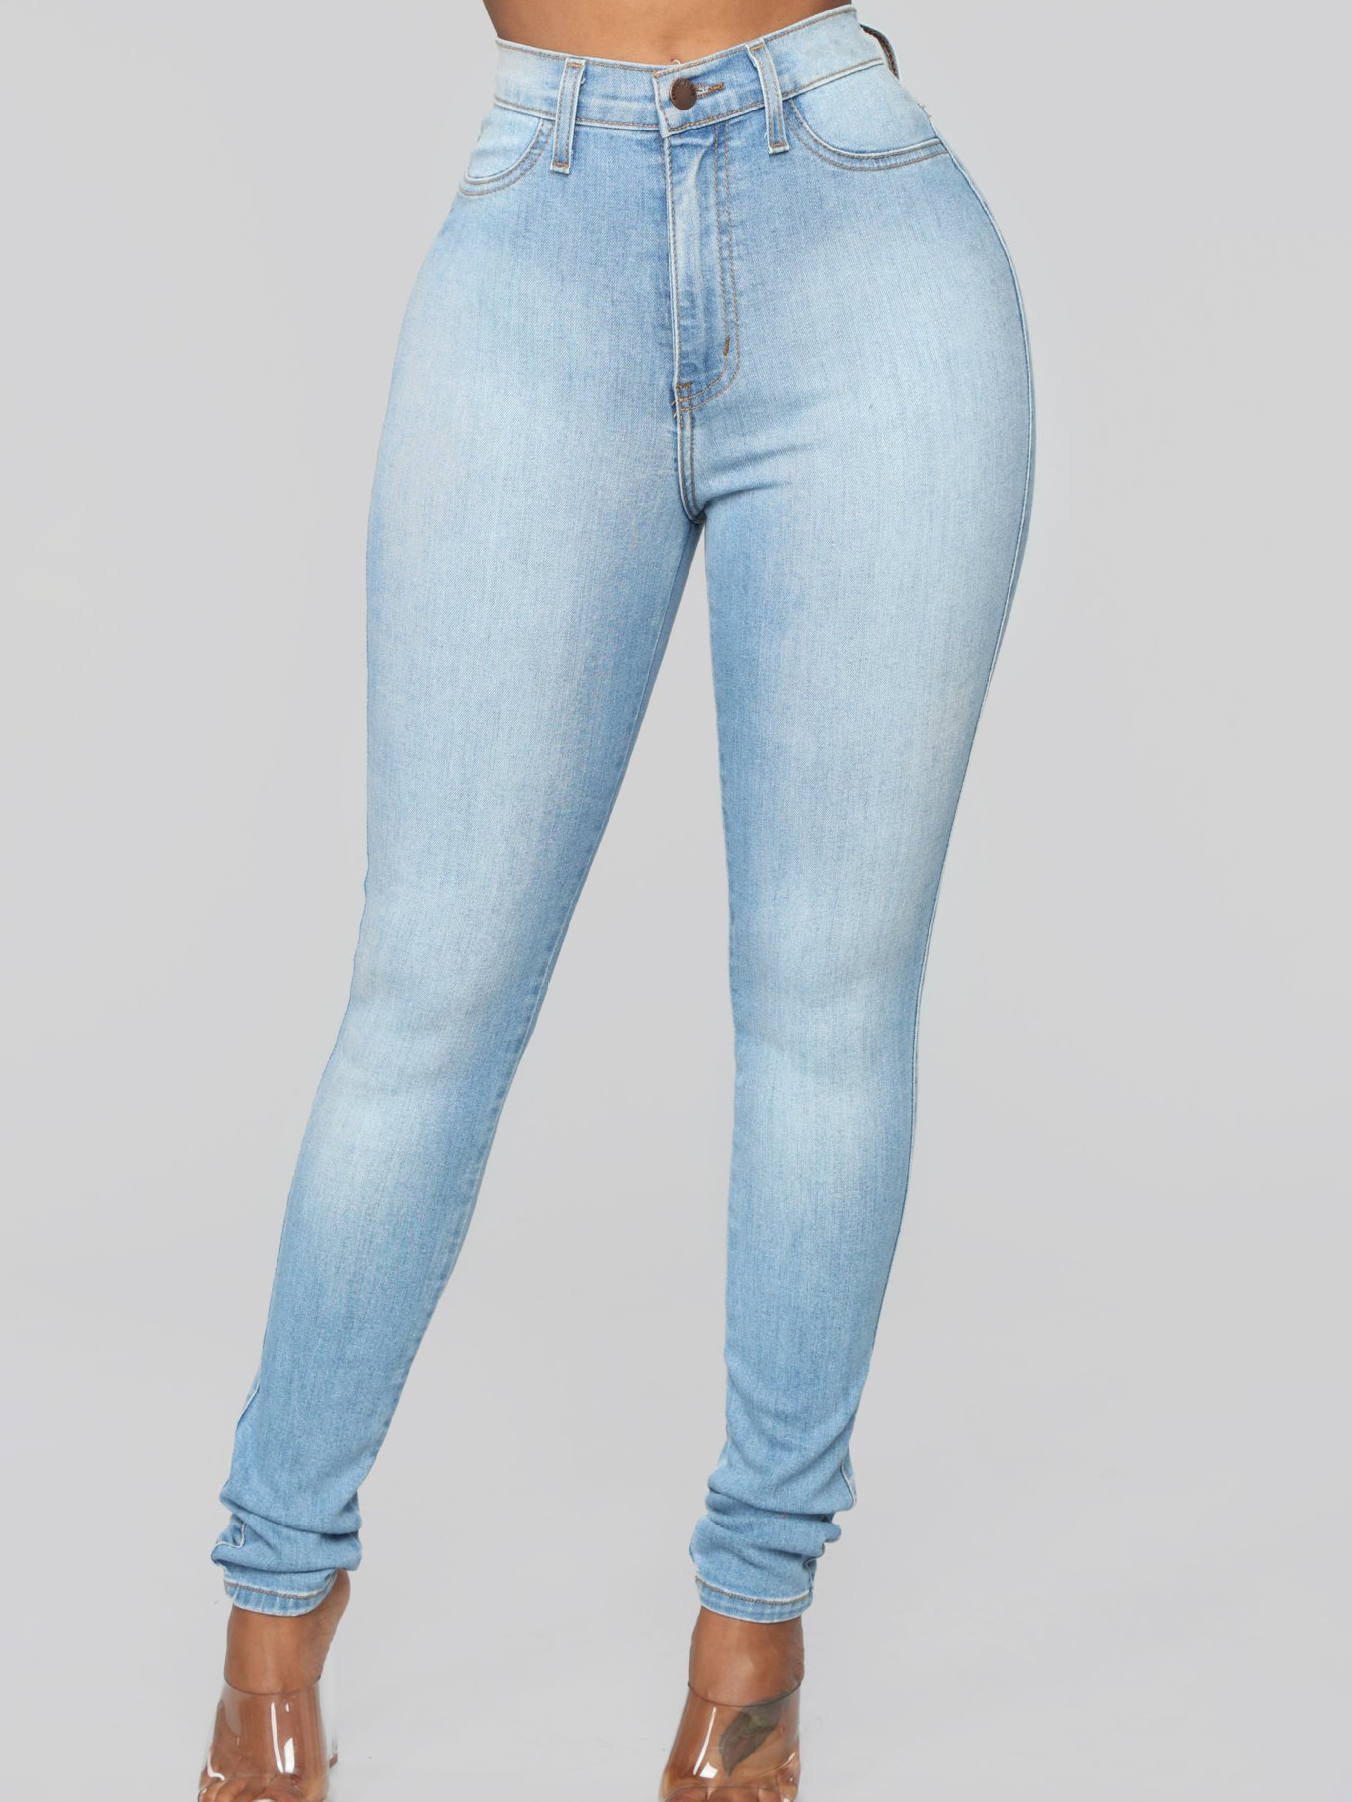 Custom Wholesale Mid Waist Solid Color Skinny Ladies Jeans